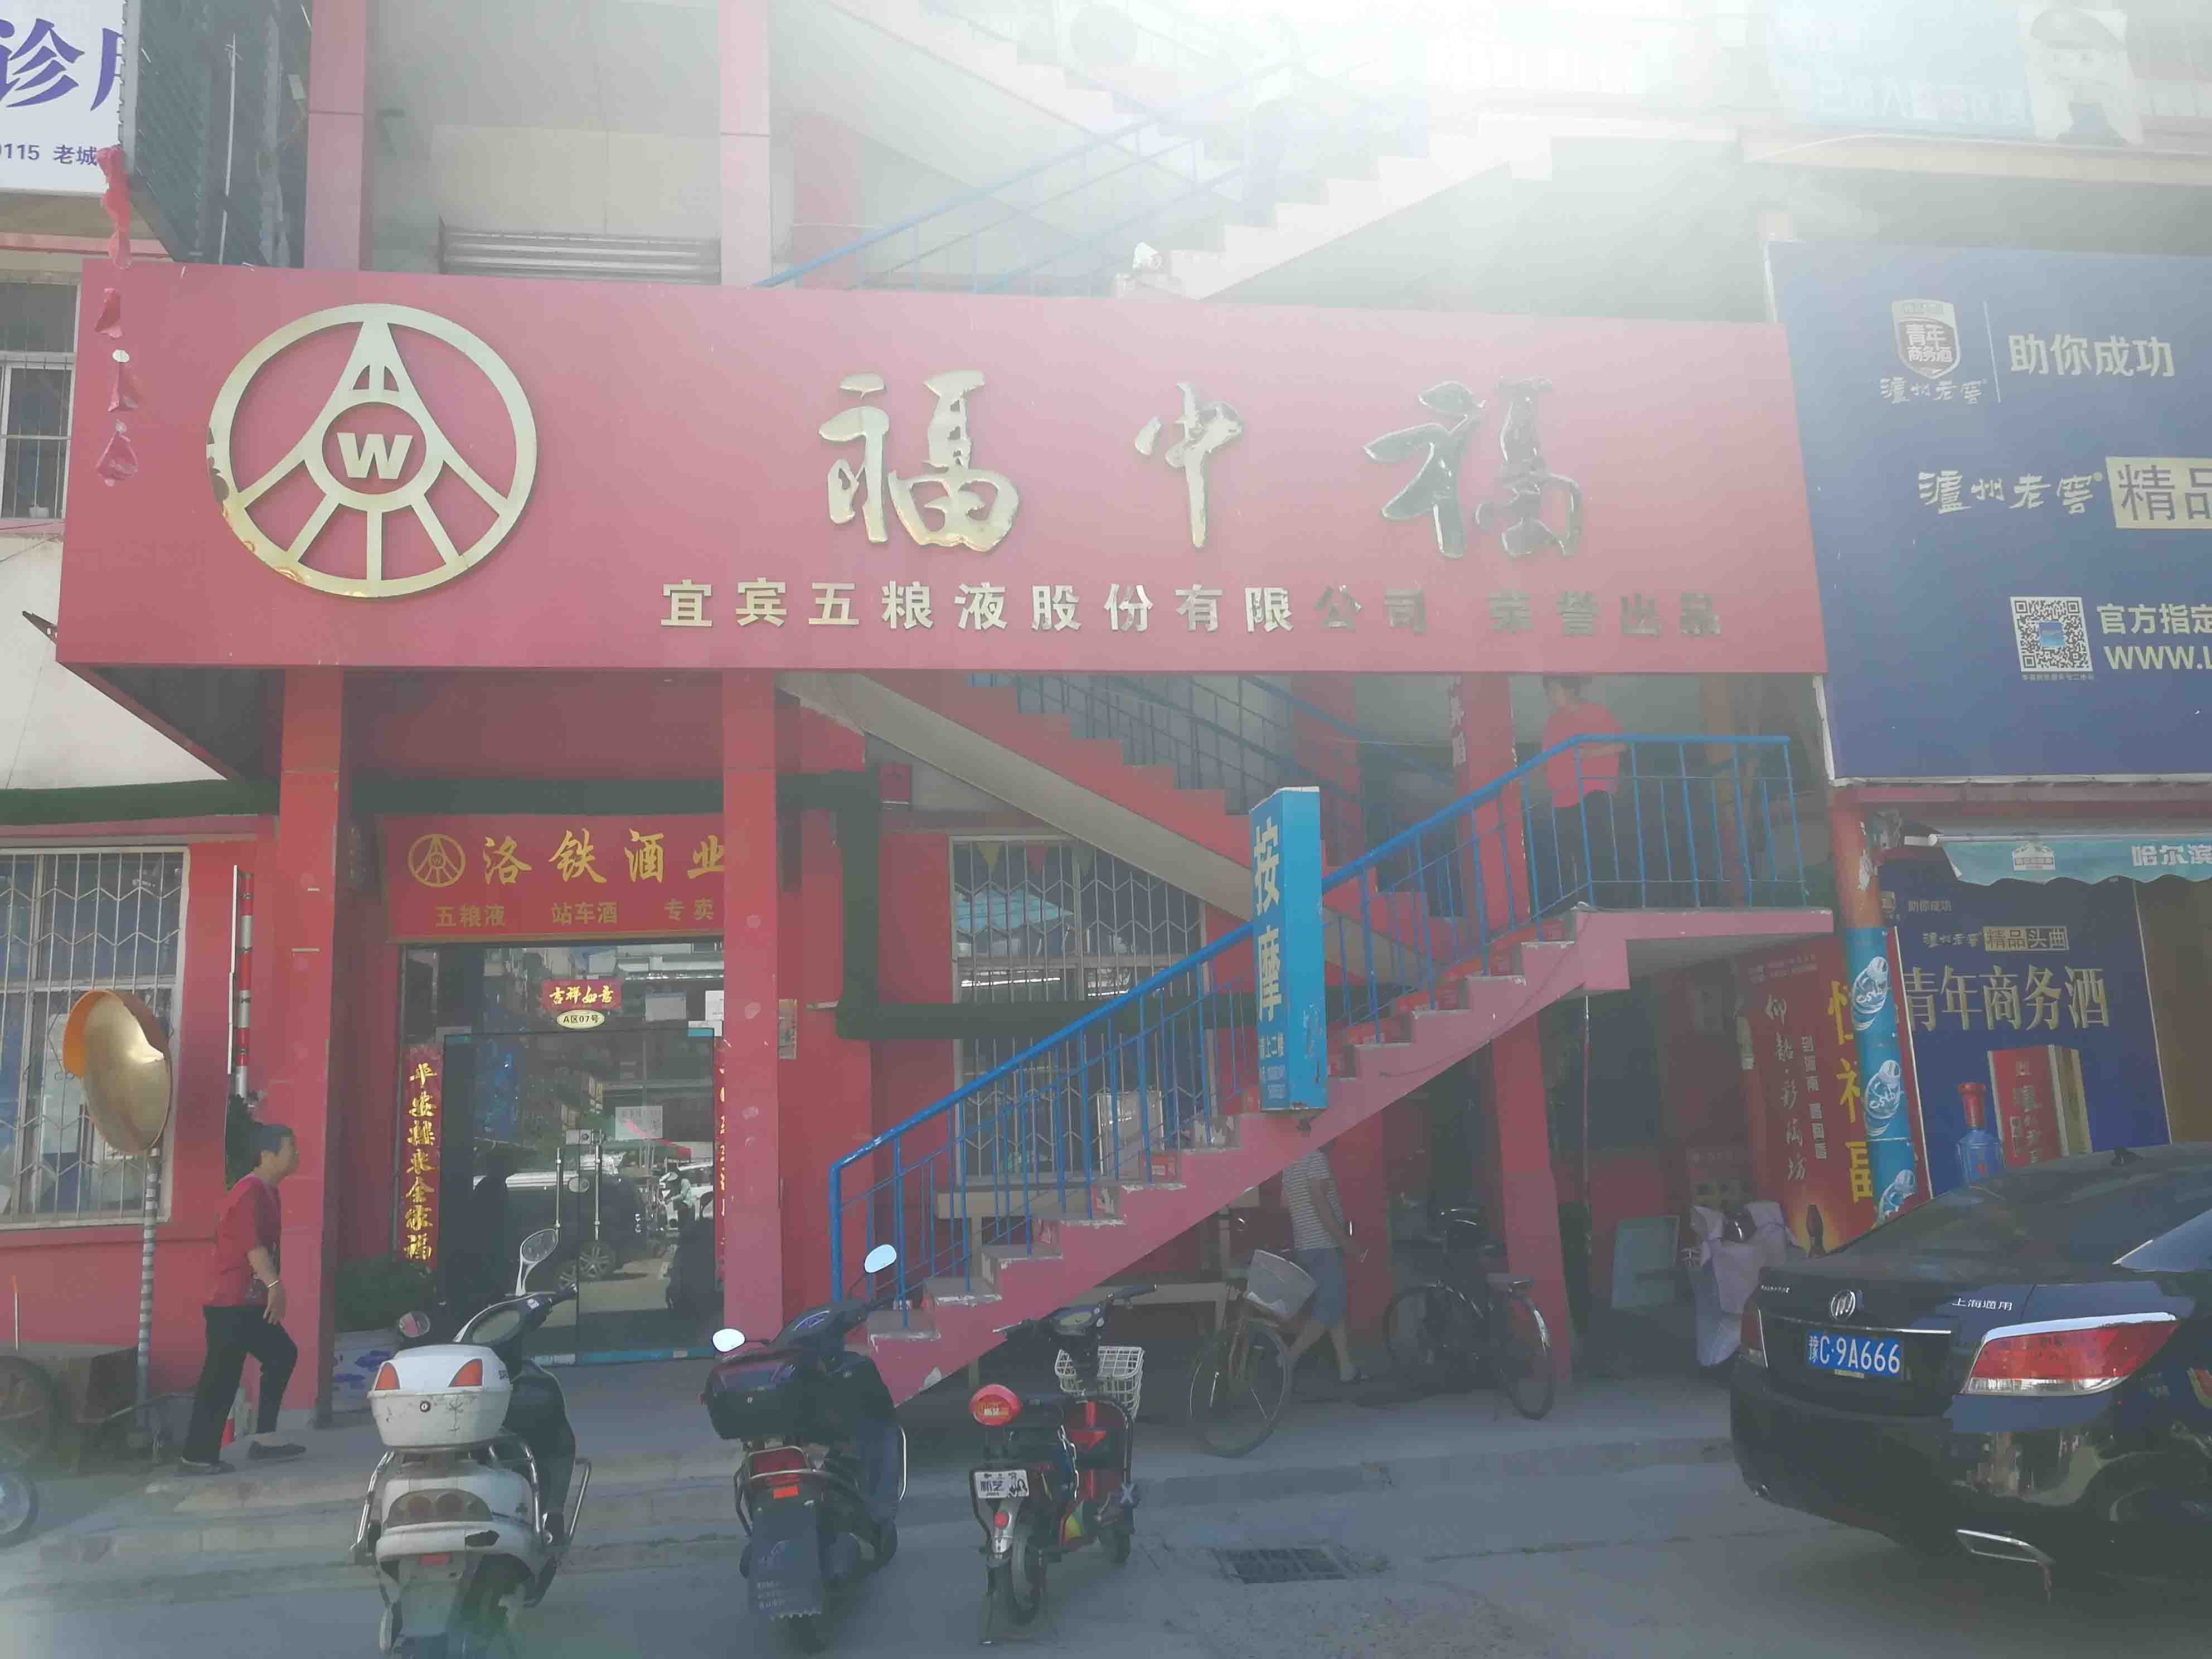 上海市场北街洛阳商业地产出租服务，提供舞蹈的商铺和写字楼选项。无论您是企业还是成熟企业，我们的列表都能满足您的需求